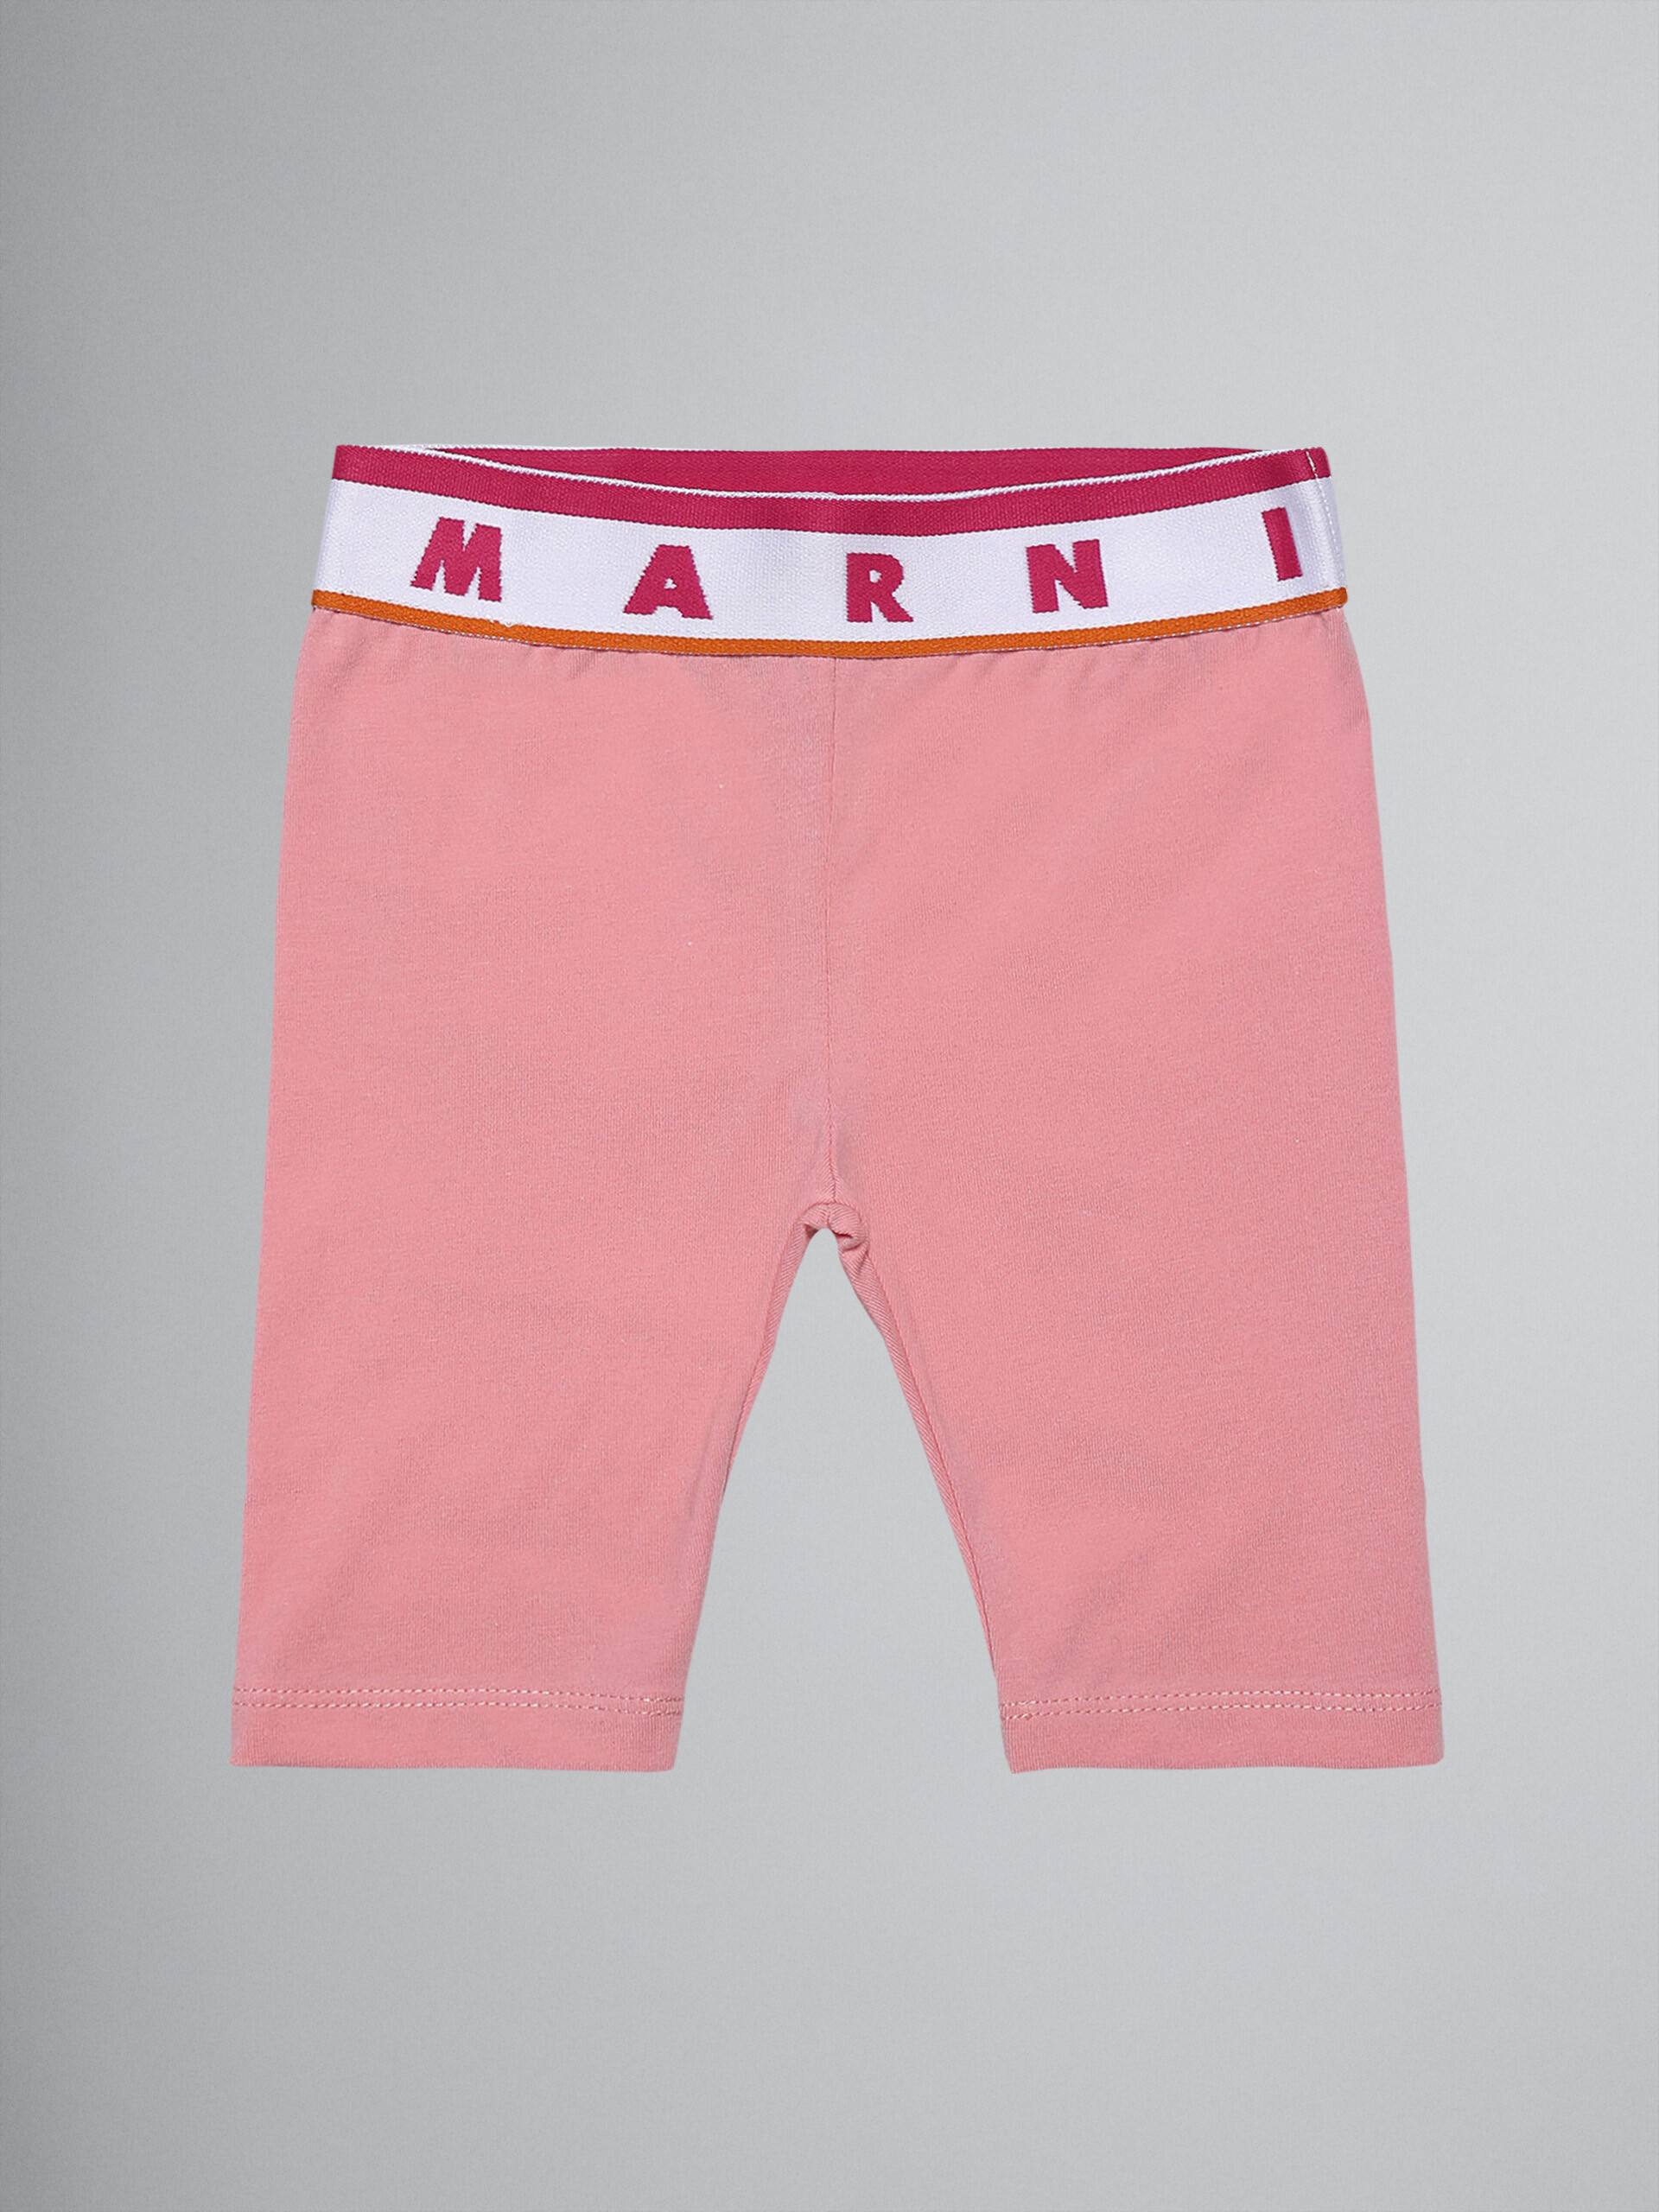 Leggings de jersey elástico rosa con logotipo - Pantalones - Image 1